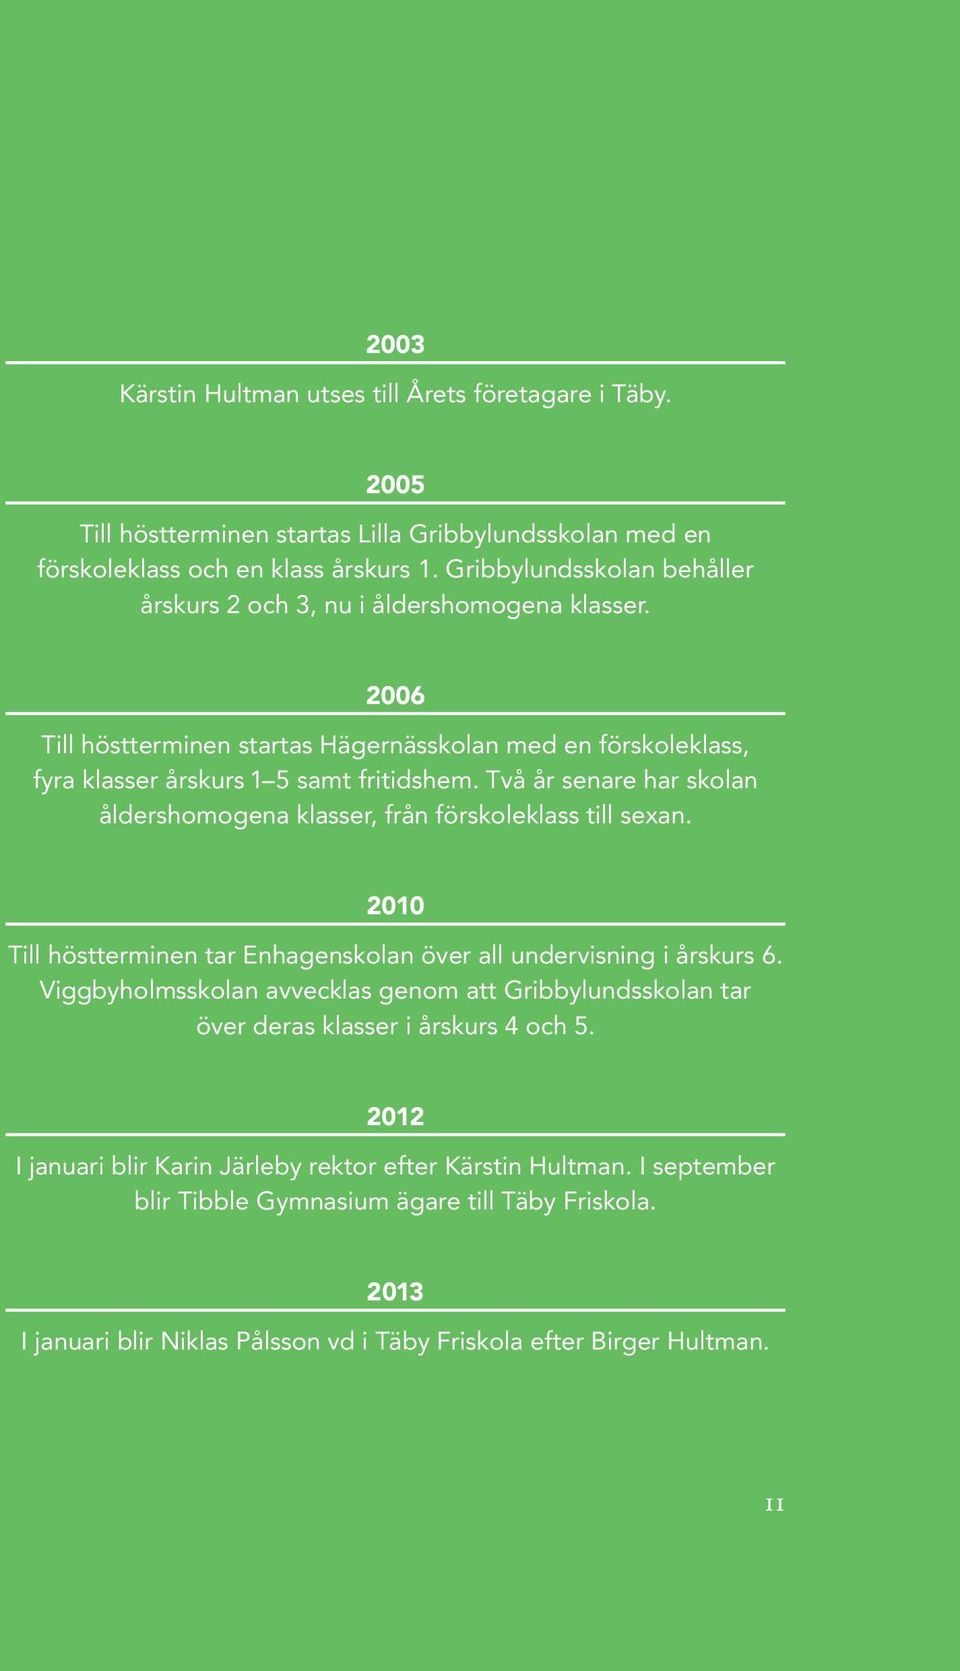 Två år senare har skolan åldershomogena klasser, från förskoleklass till sexan. 2010 Till höstterminen tar Enhagenskolan över all undervisning i årskurs 6.